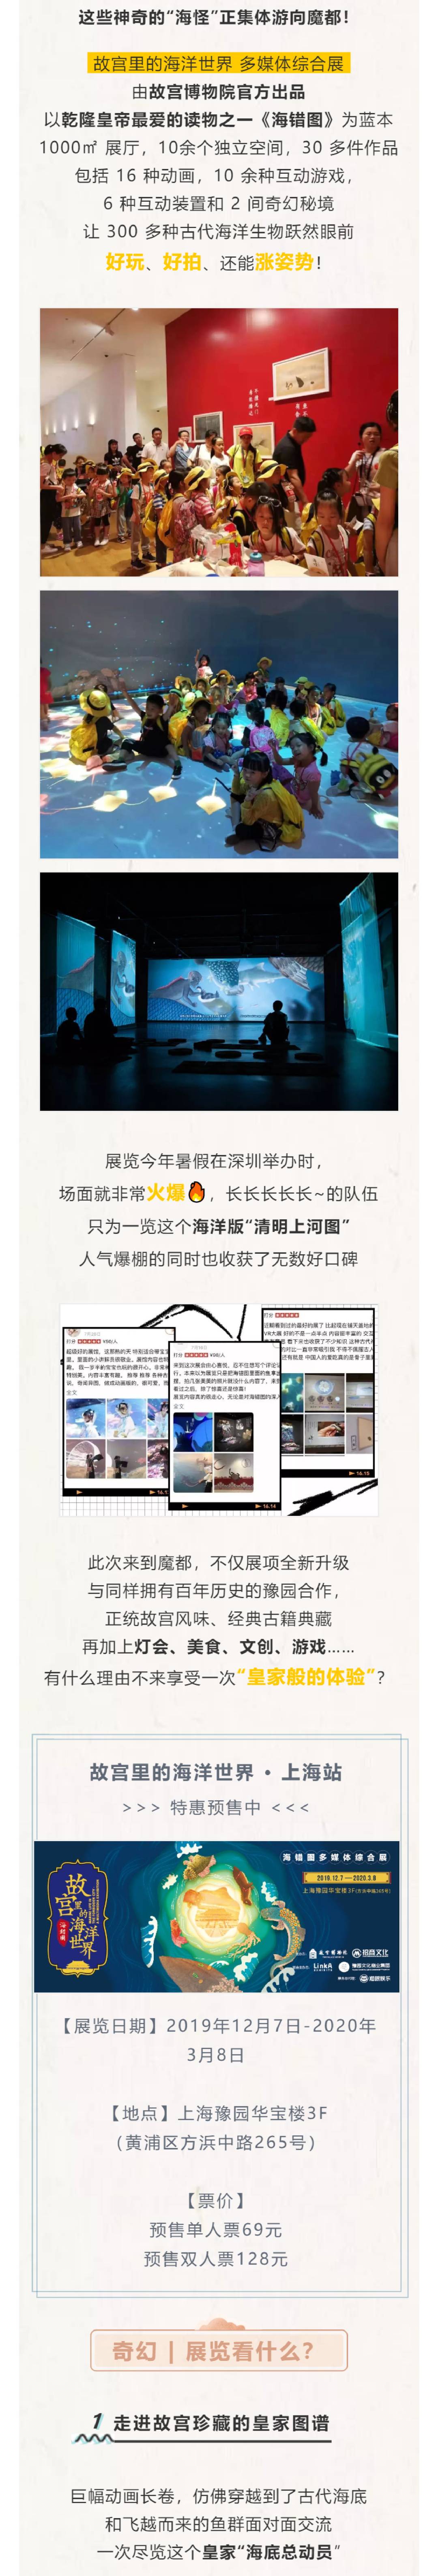 【上海】69元抢故宫里的海洋世界限时预售单人票 ，1000平方展厅/30多件作品，让300多种古代海洋生物跃然眼前，好玩、好拍、还能涨姿势！